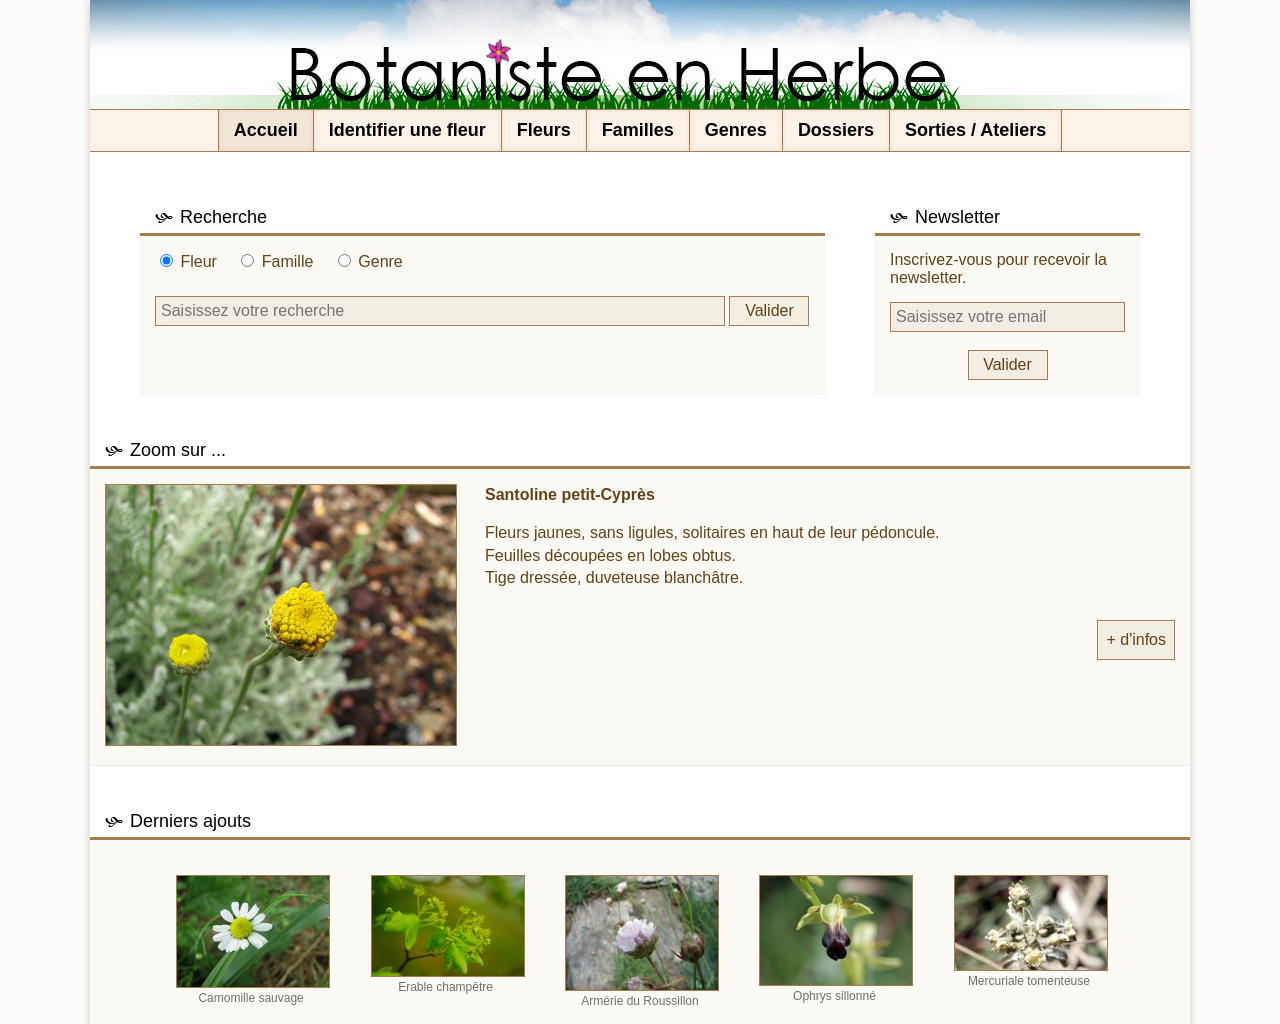 botaniste-en-herbe.net